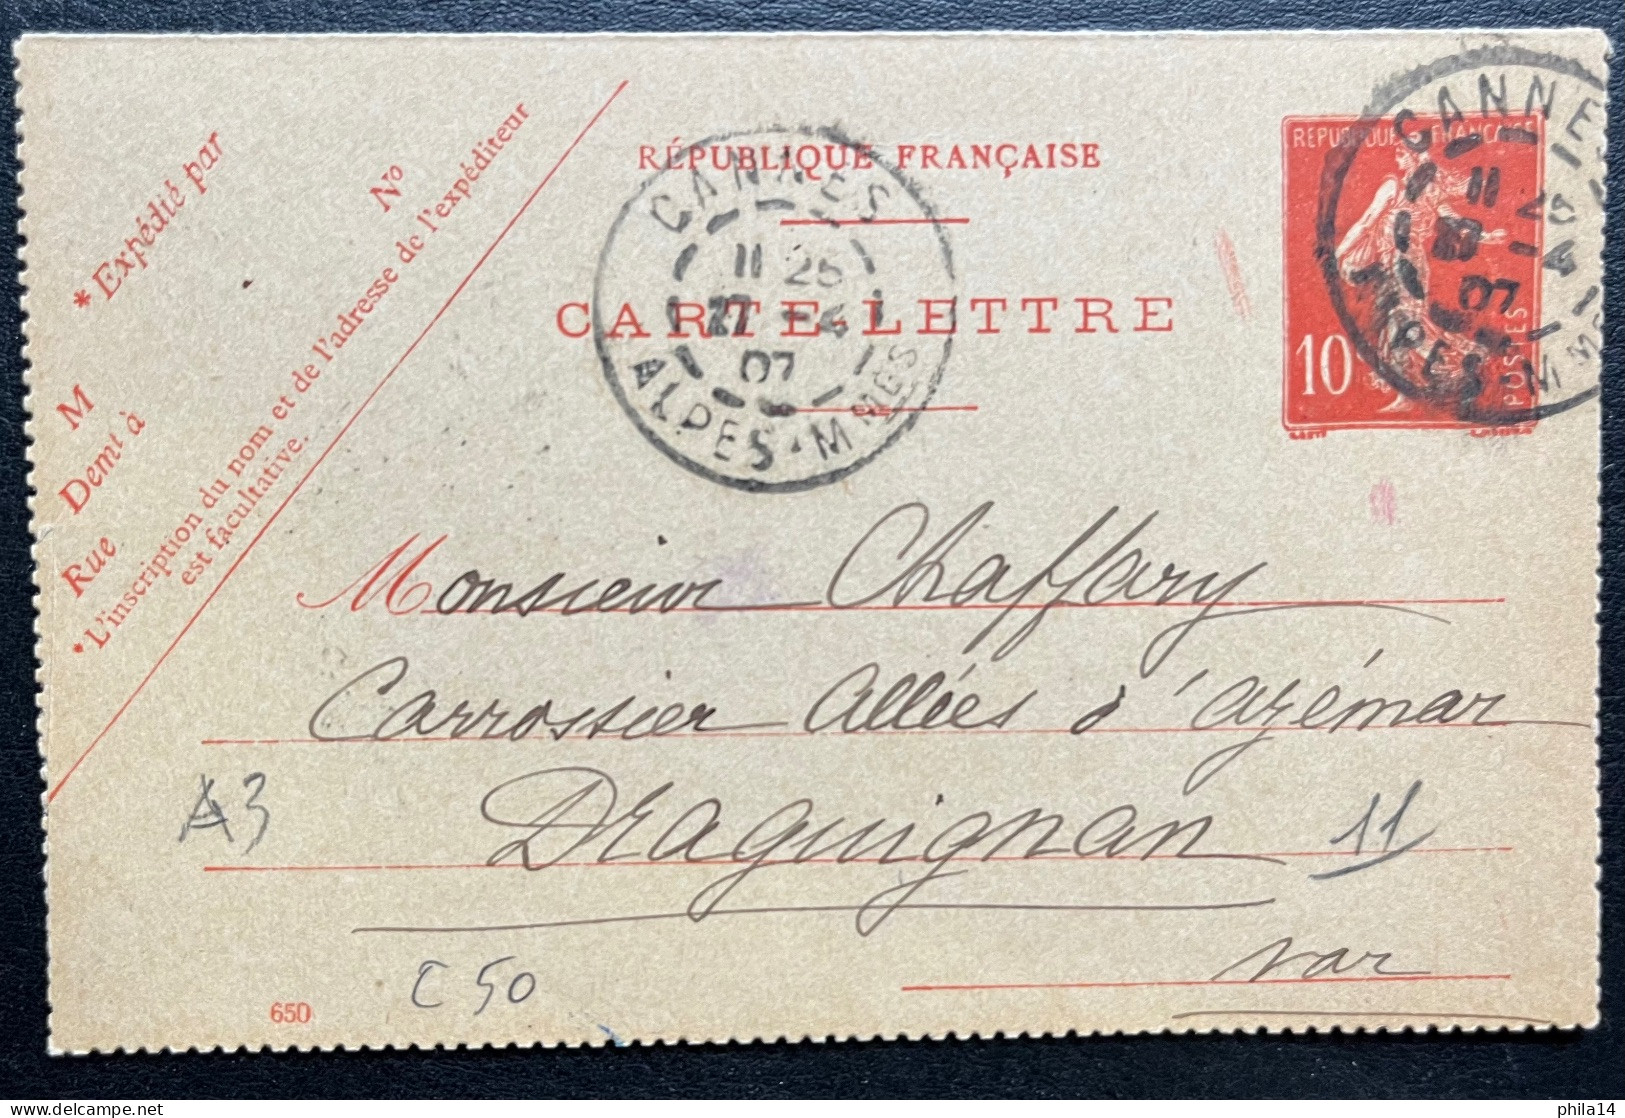 10c SEMEUSE CARTE LETTRE / CANNES POUR DRAGUIGNAN 1907 - Cartes-lettres